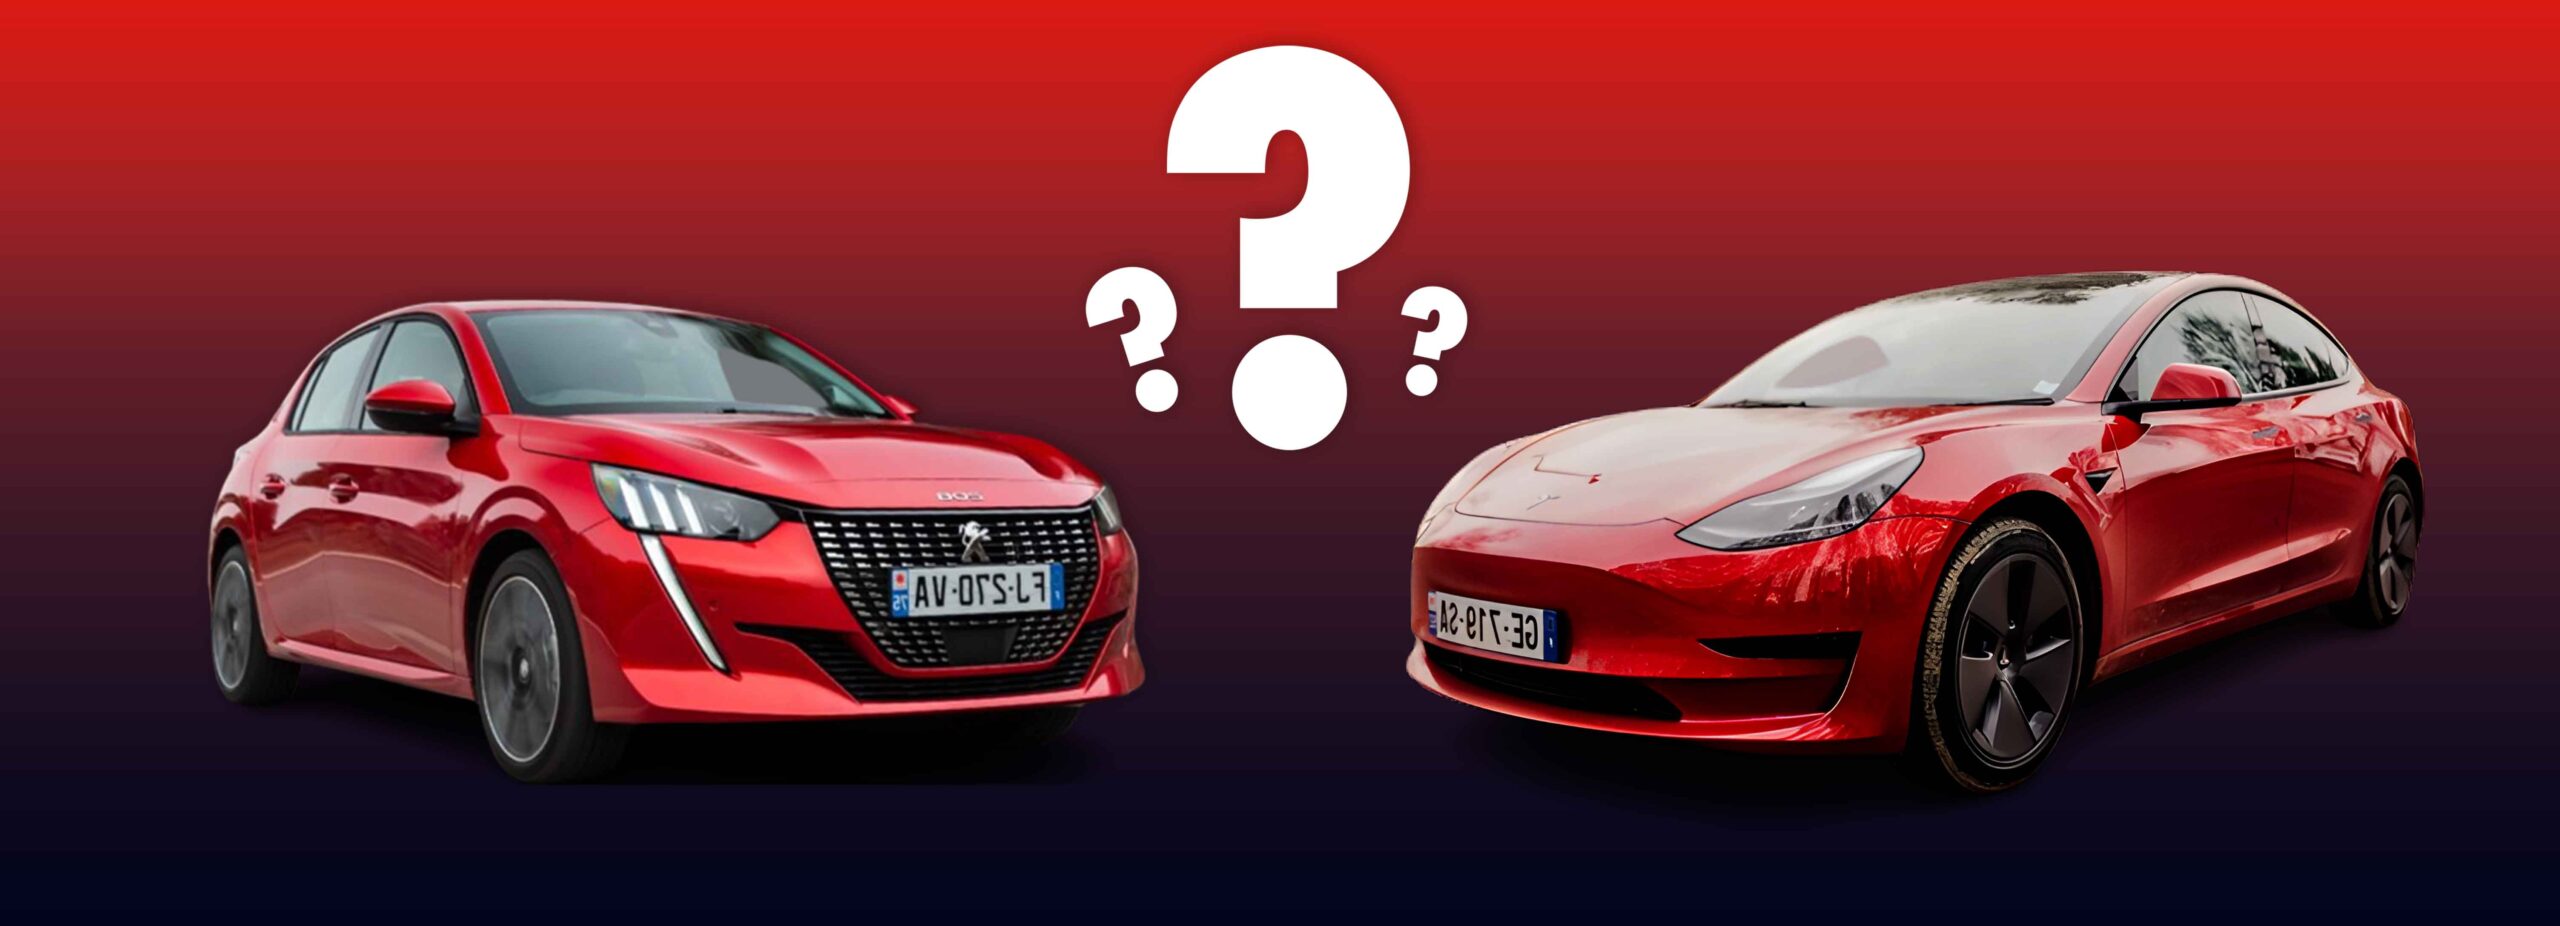 Peugeot 208 rouge, Tesla model 3 rouge, changer de voiture pour une citadine essence ou une berline électrique